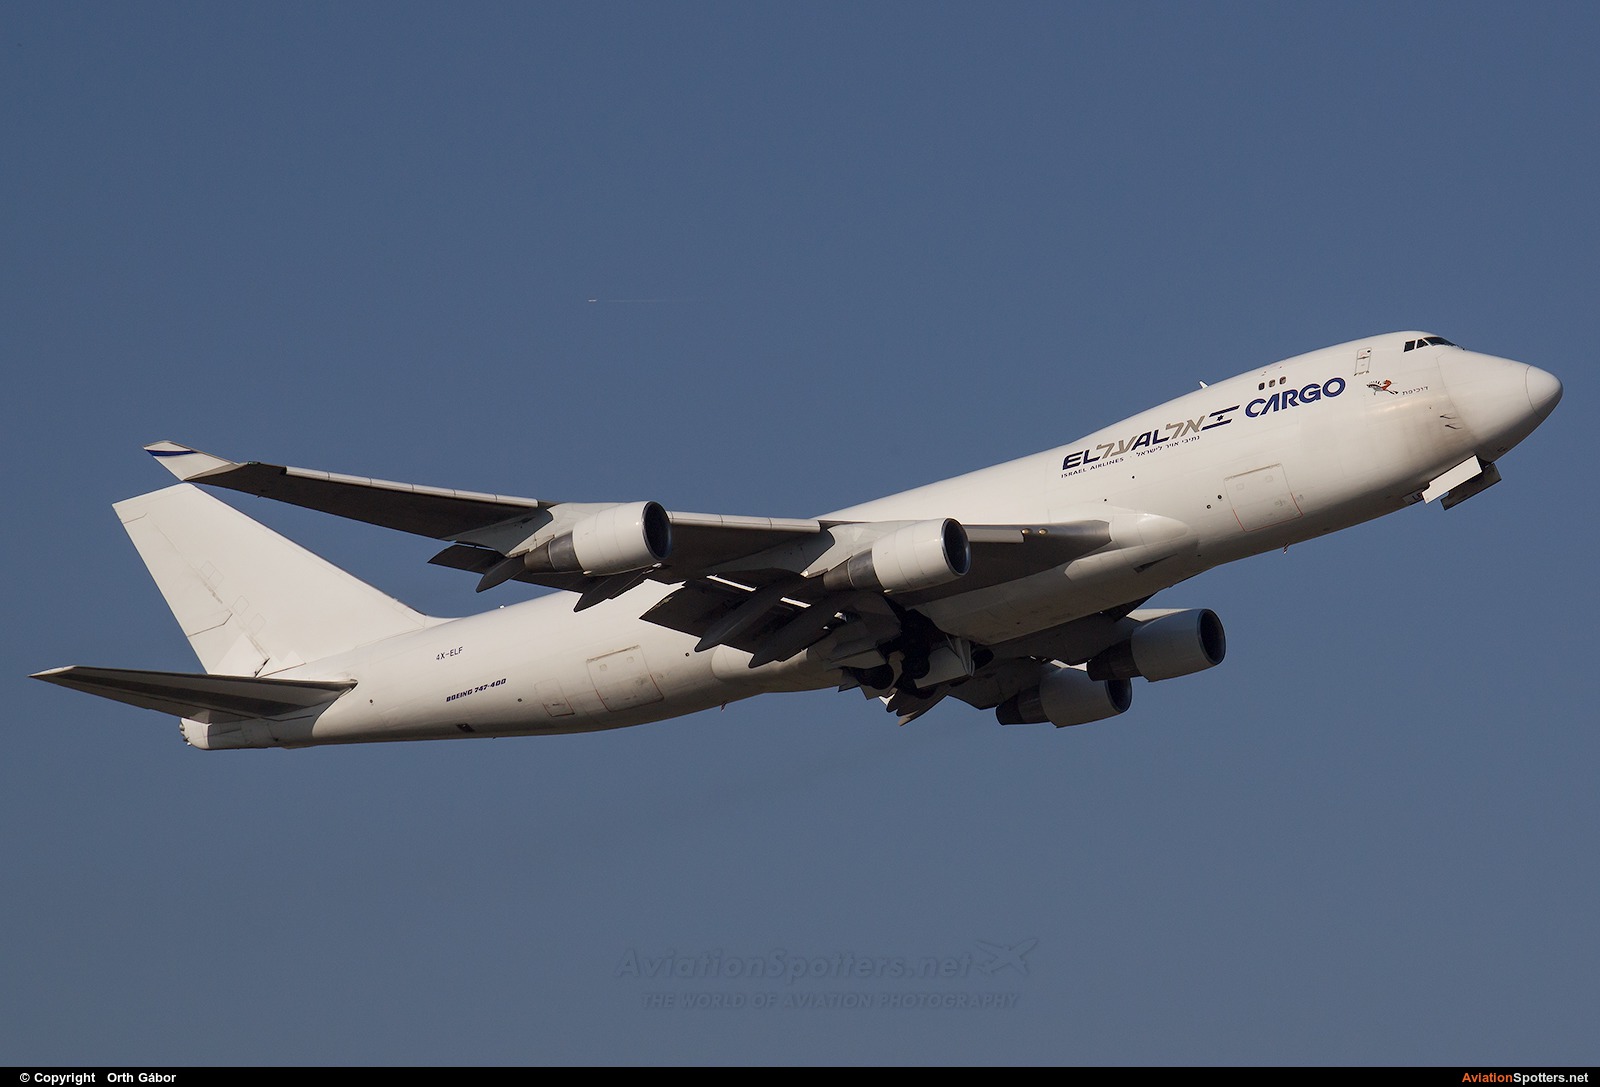 El Al Cargo  -  747-400F  (4X-ELF) By Orth Gábor (Roodkop)